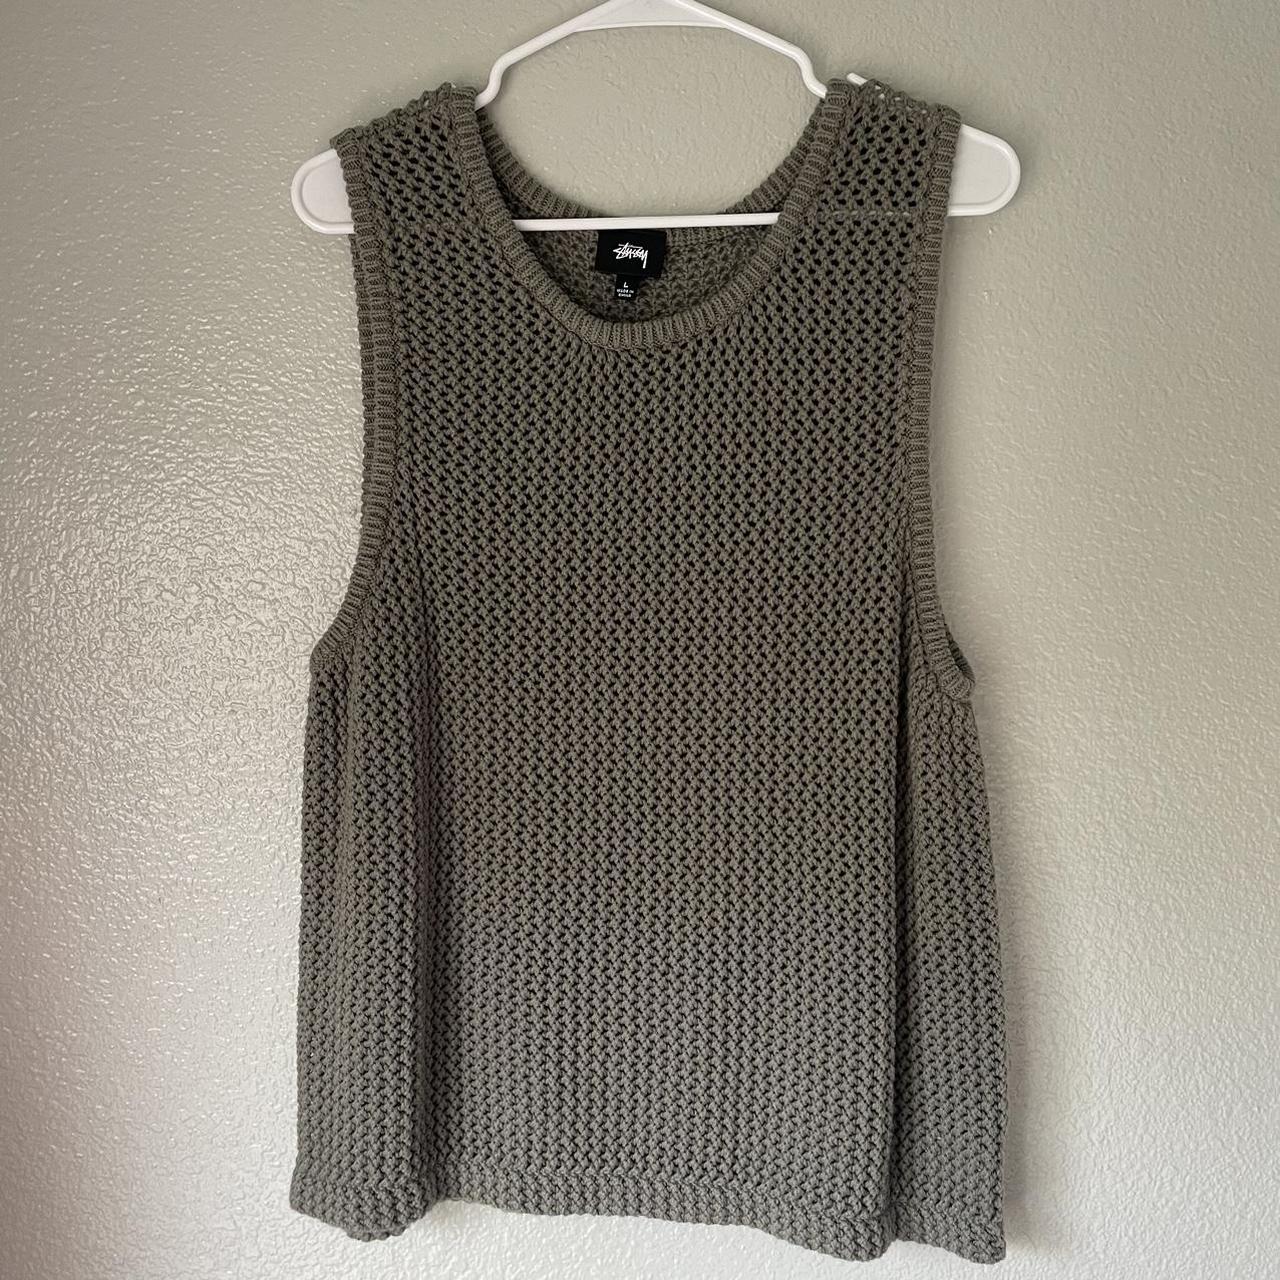 Stussy Crochet Knit Vest style tank top. Really Irie... - Depop